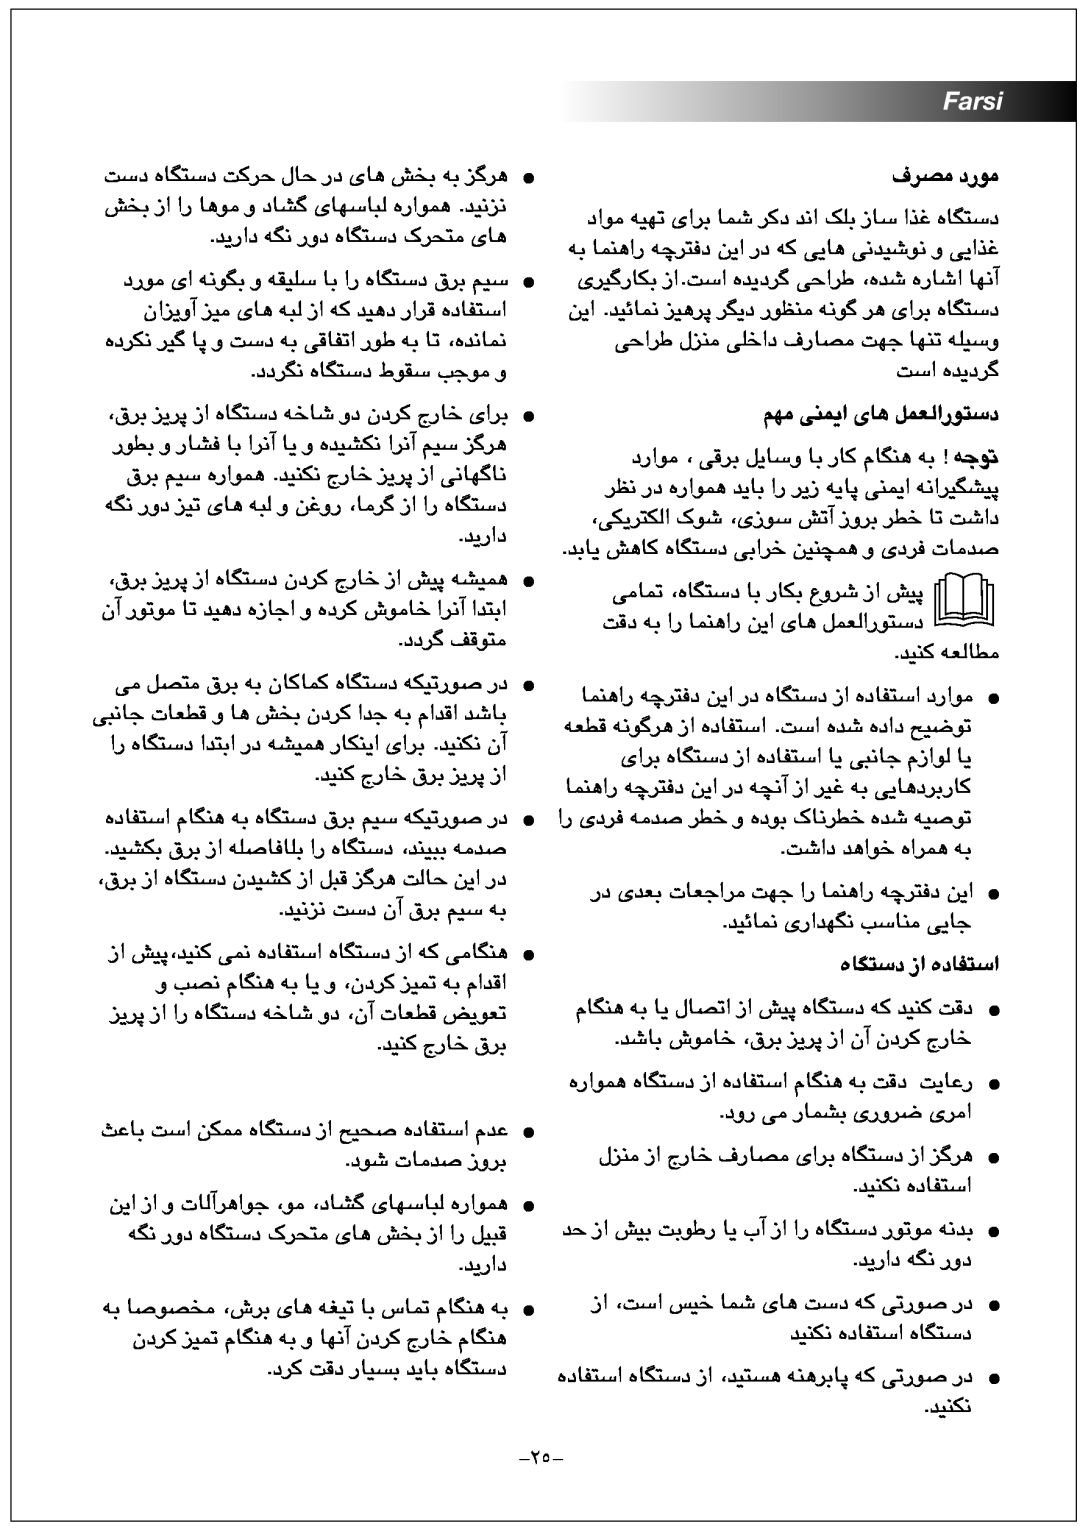 Black & Decker FX1000 manual Farsi, ﻑﺮﺼﻣ ﺩﺭﻮﻣ, ﻢﻬﻣ ﯽﻨﻤﯾﺍ ﯼﺎﻫ ﻞﻤﻌﻟﺍﺭﻮﺘﺳﺩ, ﻩﺎﮕﺘﺳﺩ ﺯﺍ ﻩﺩﺎﻔﺘﺳﺍ 